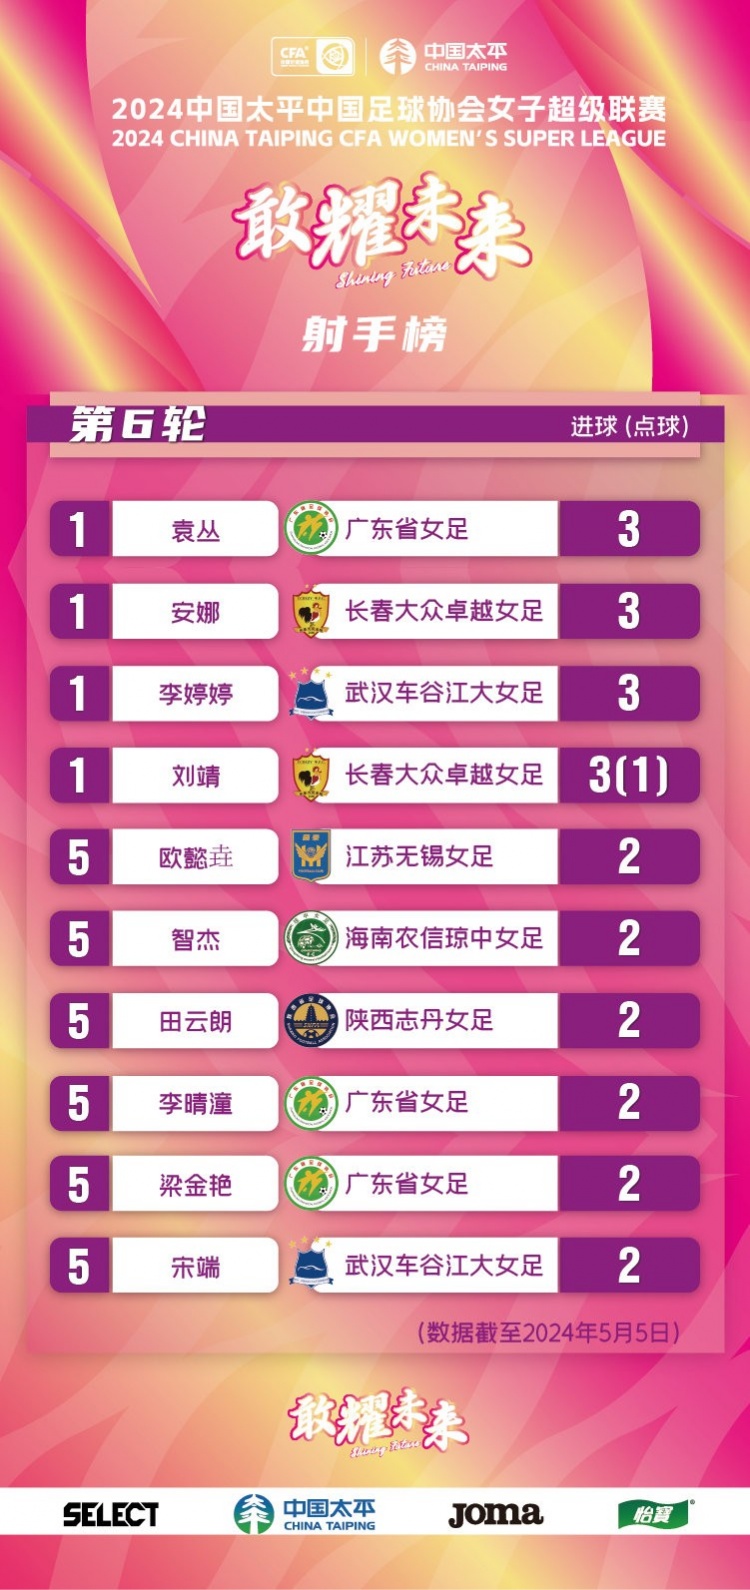 女超联赛第6轮：武汉取胜跃居榜首，与广东、长春同积14分